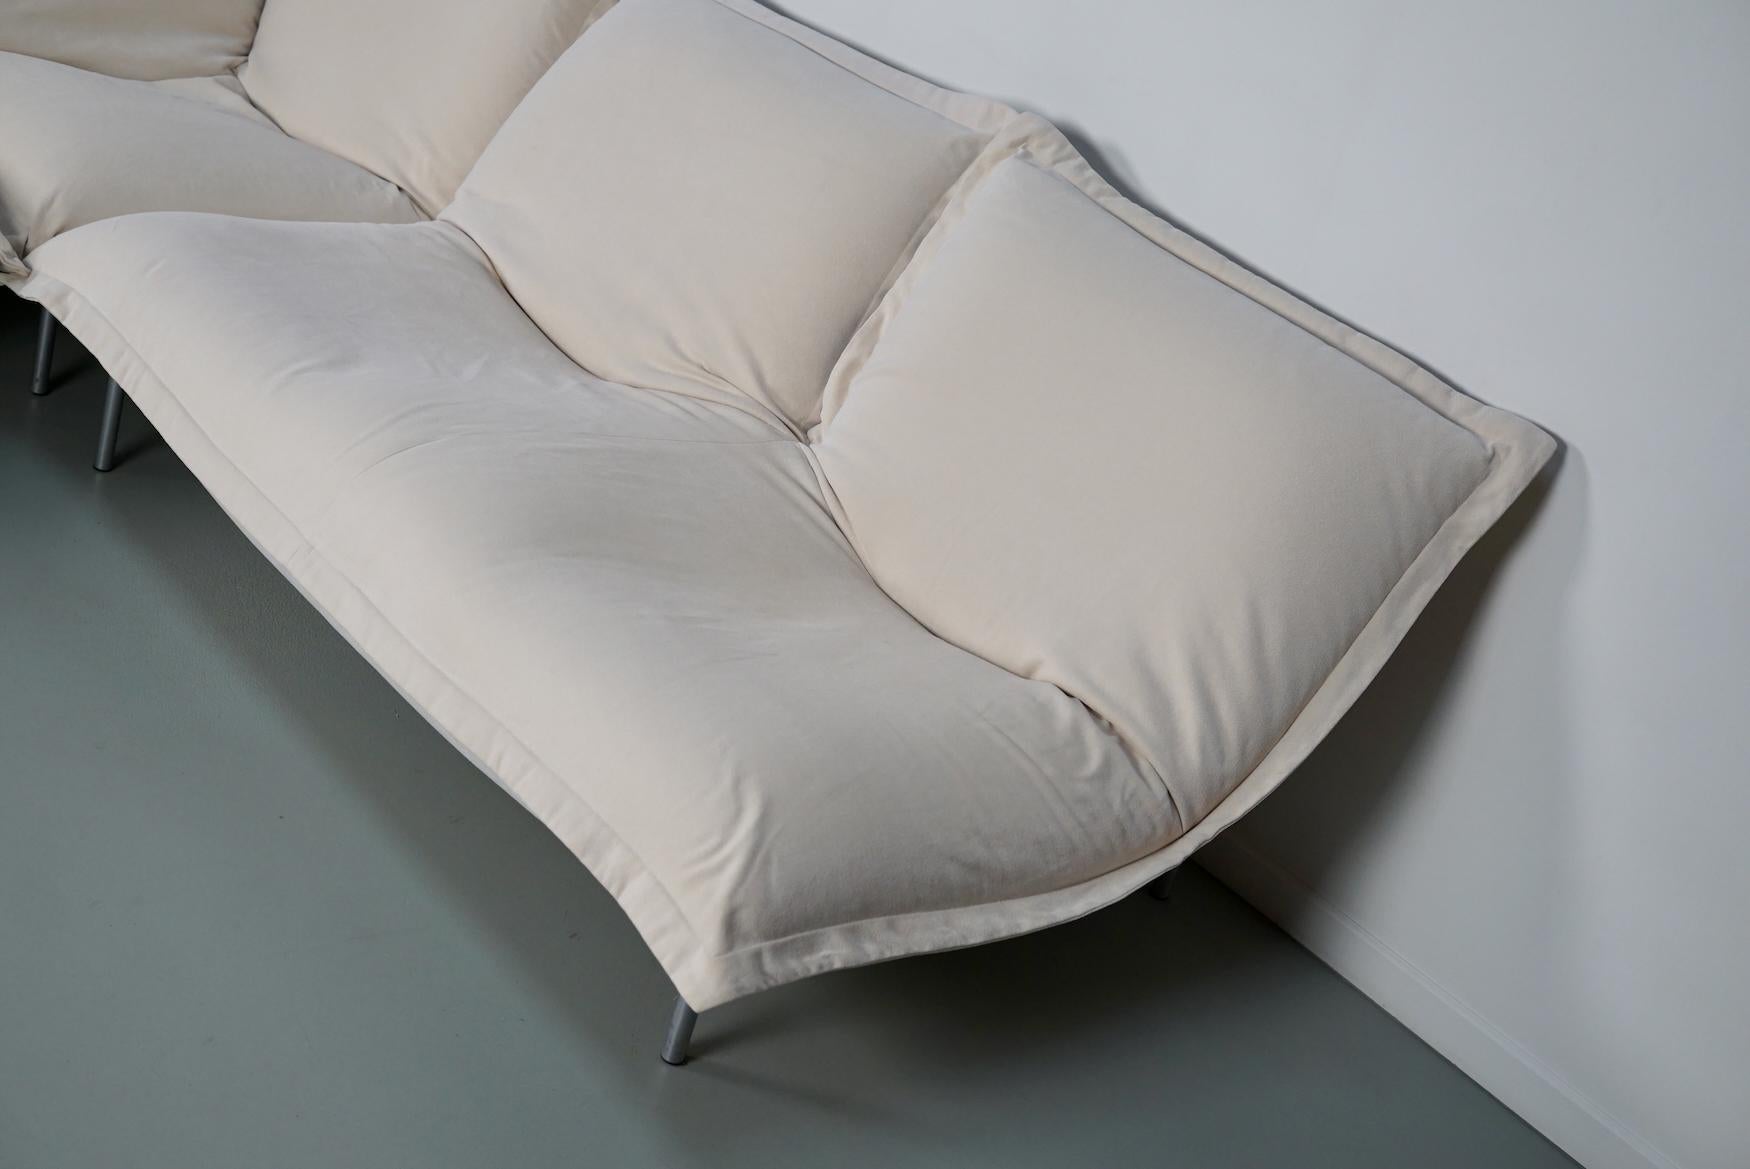 Calin Corner Sofa Set by Pascal Mourgue for Cinna / Ligne Roset - 4 seater 3